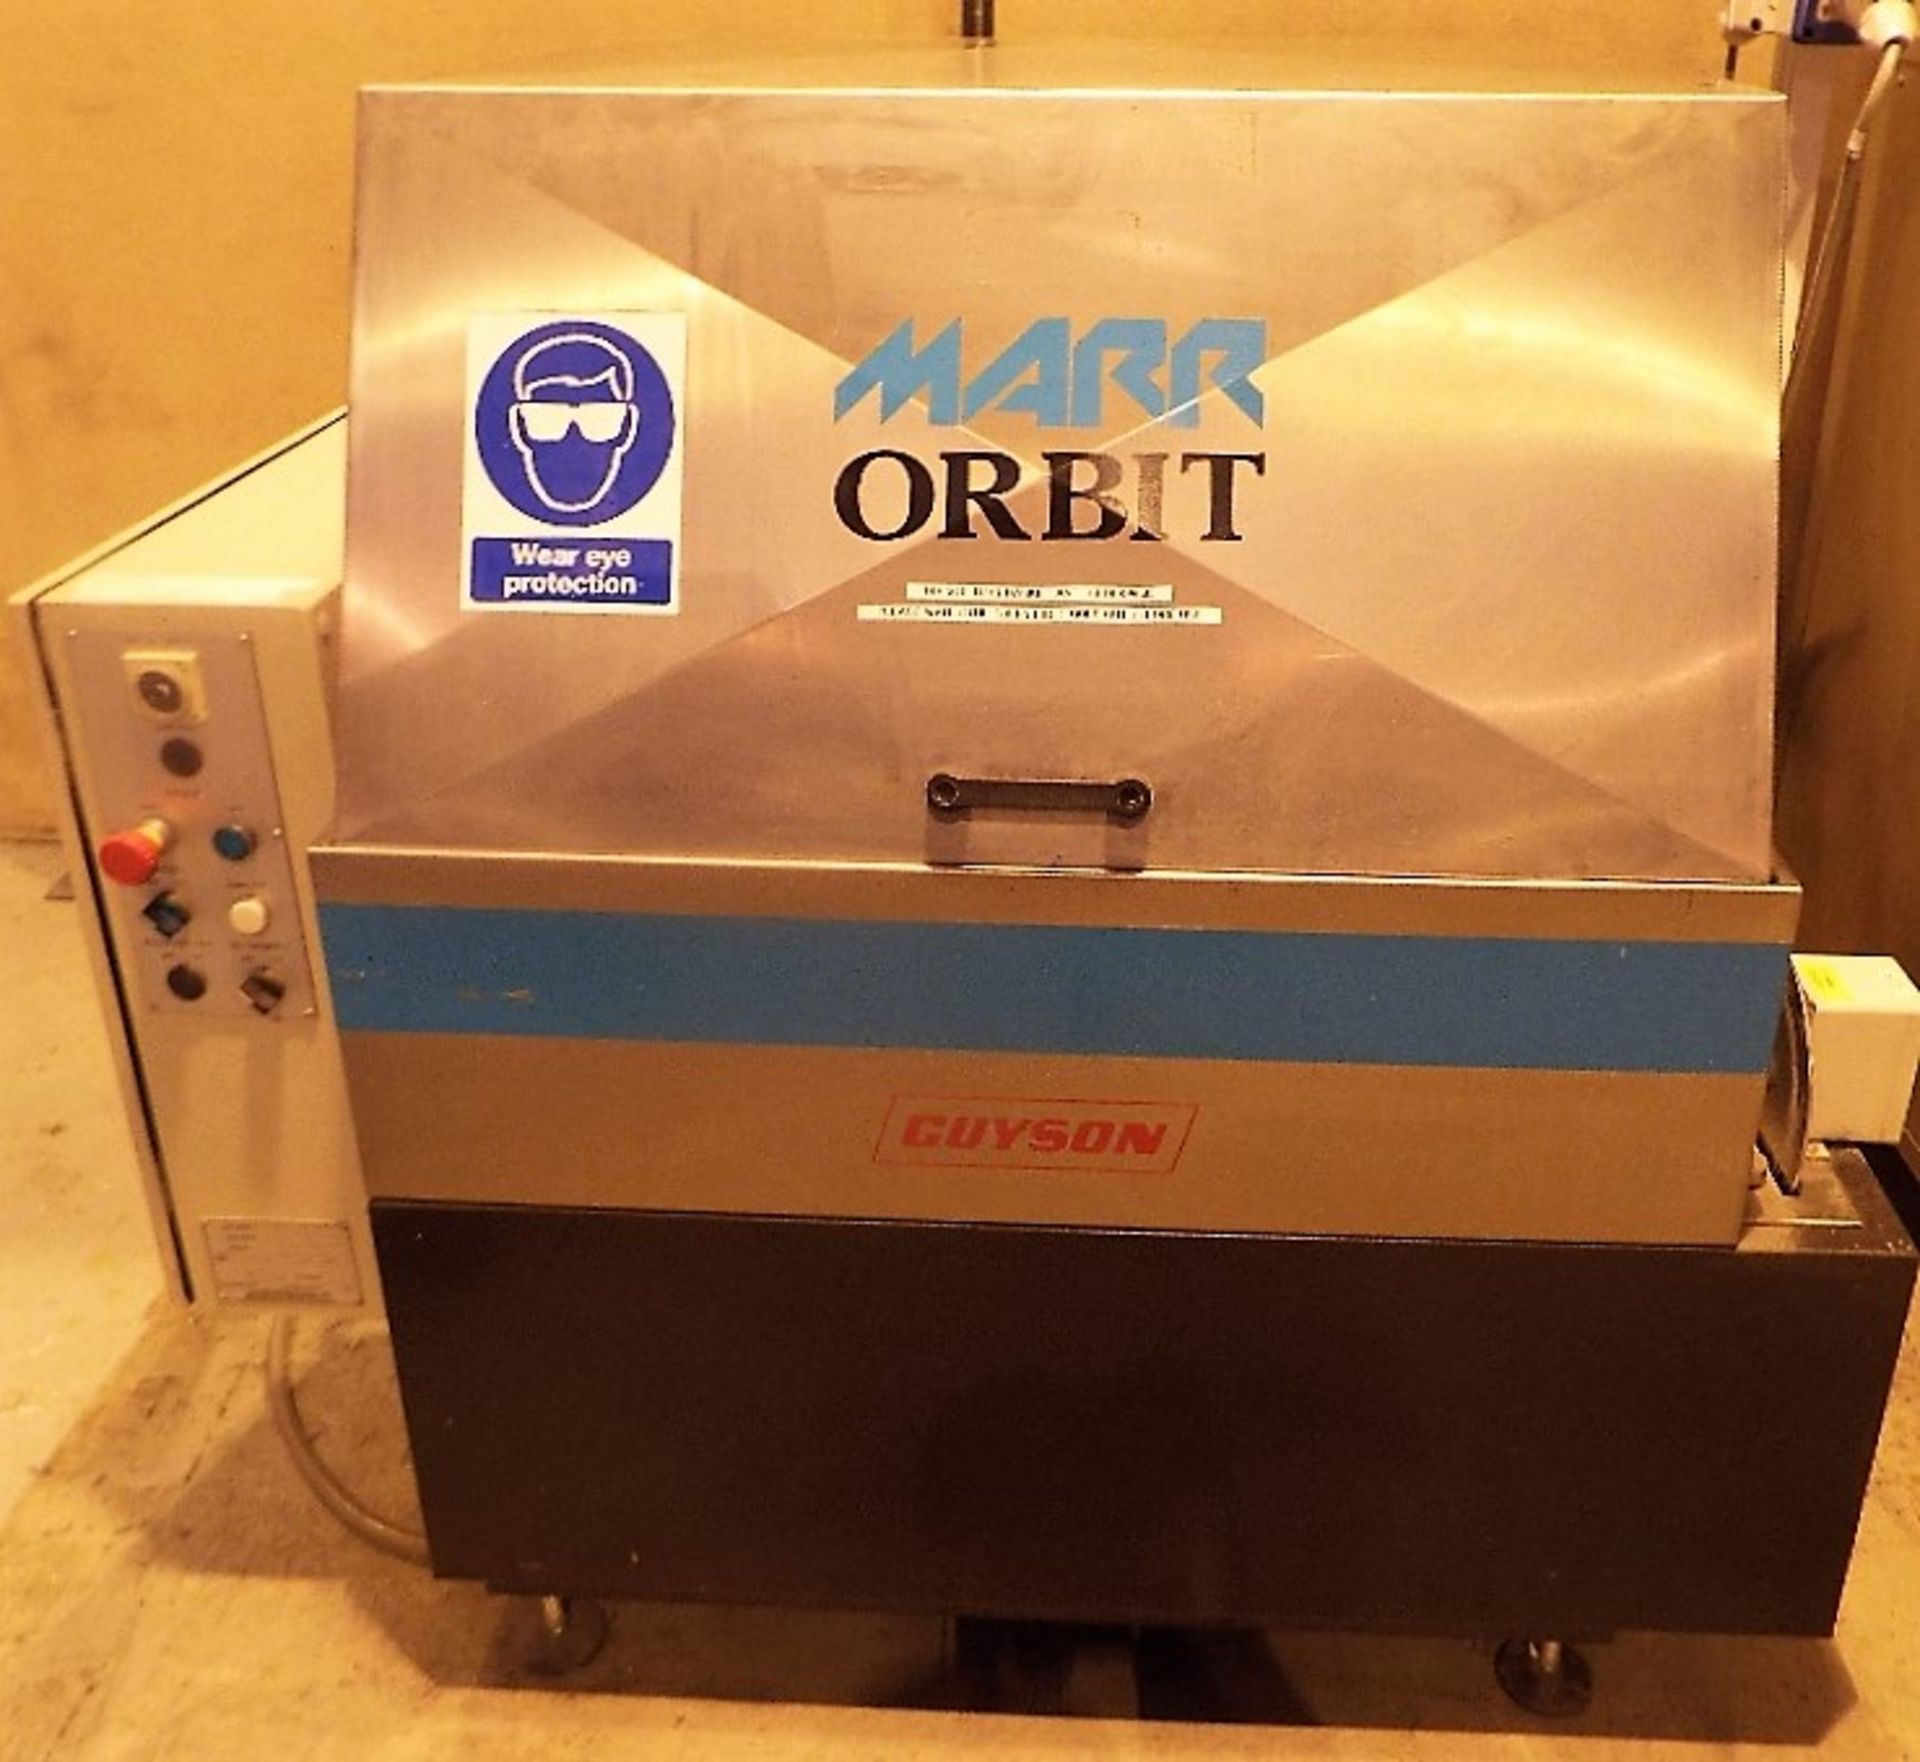 Guyson Marr Orbit 800 Parts Washing Machine